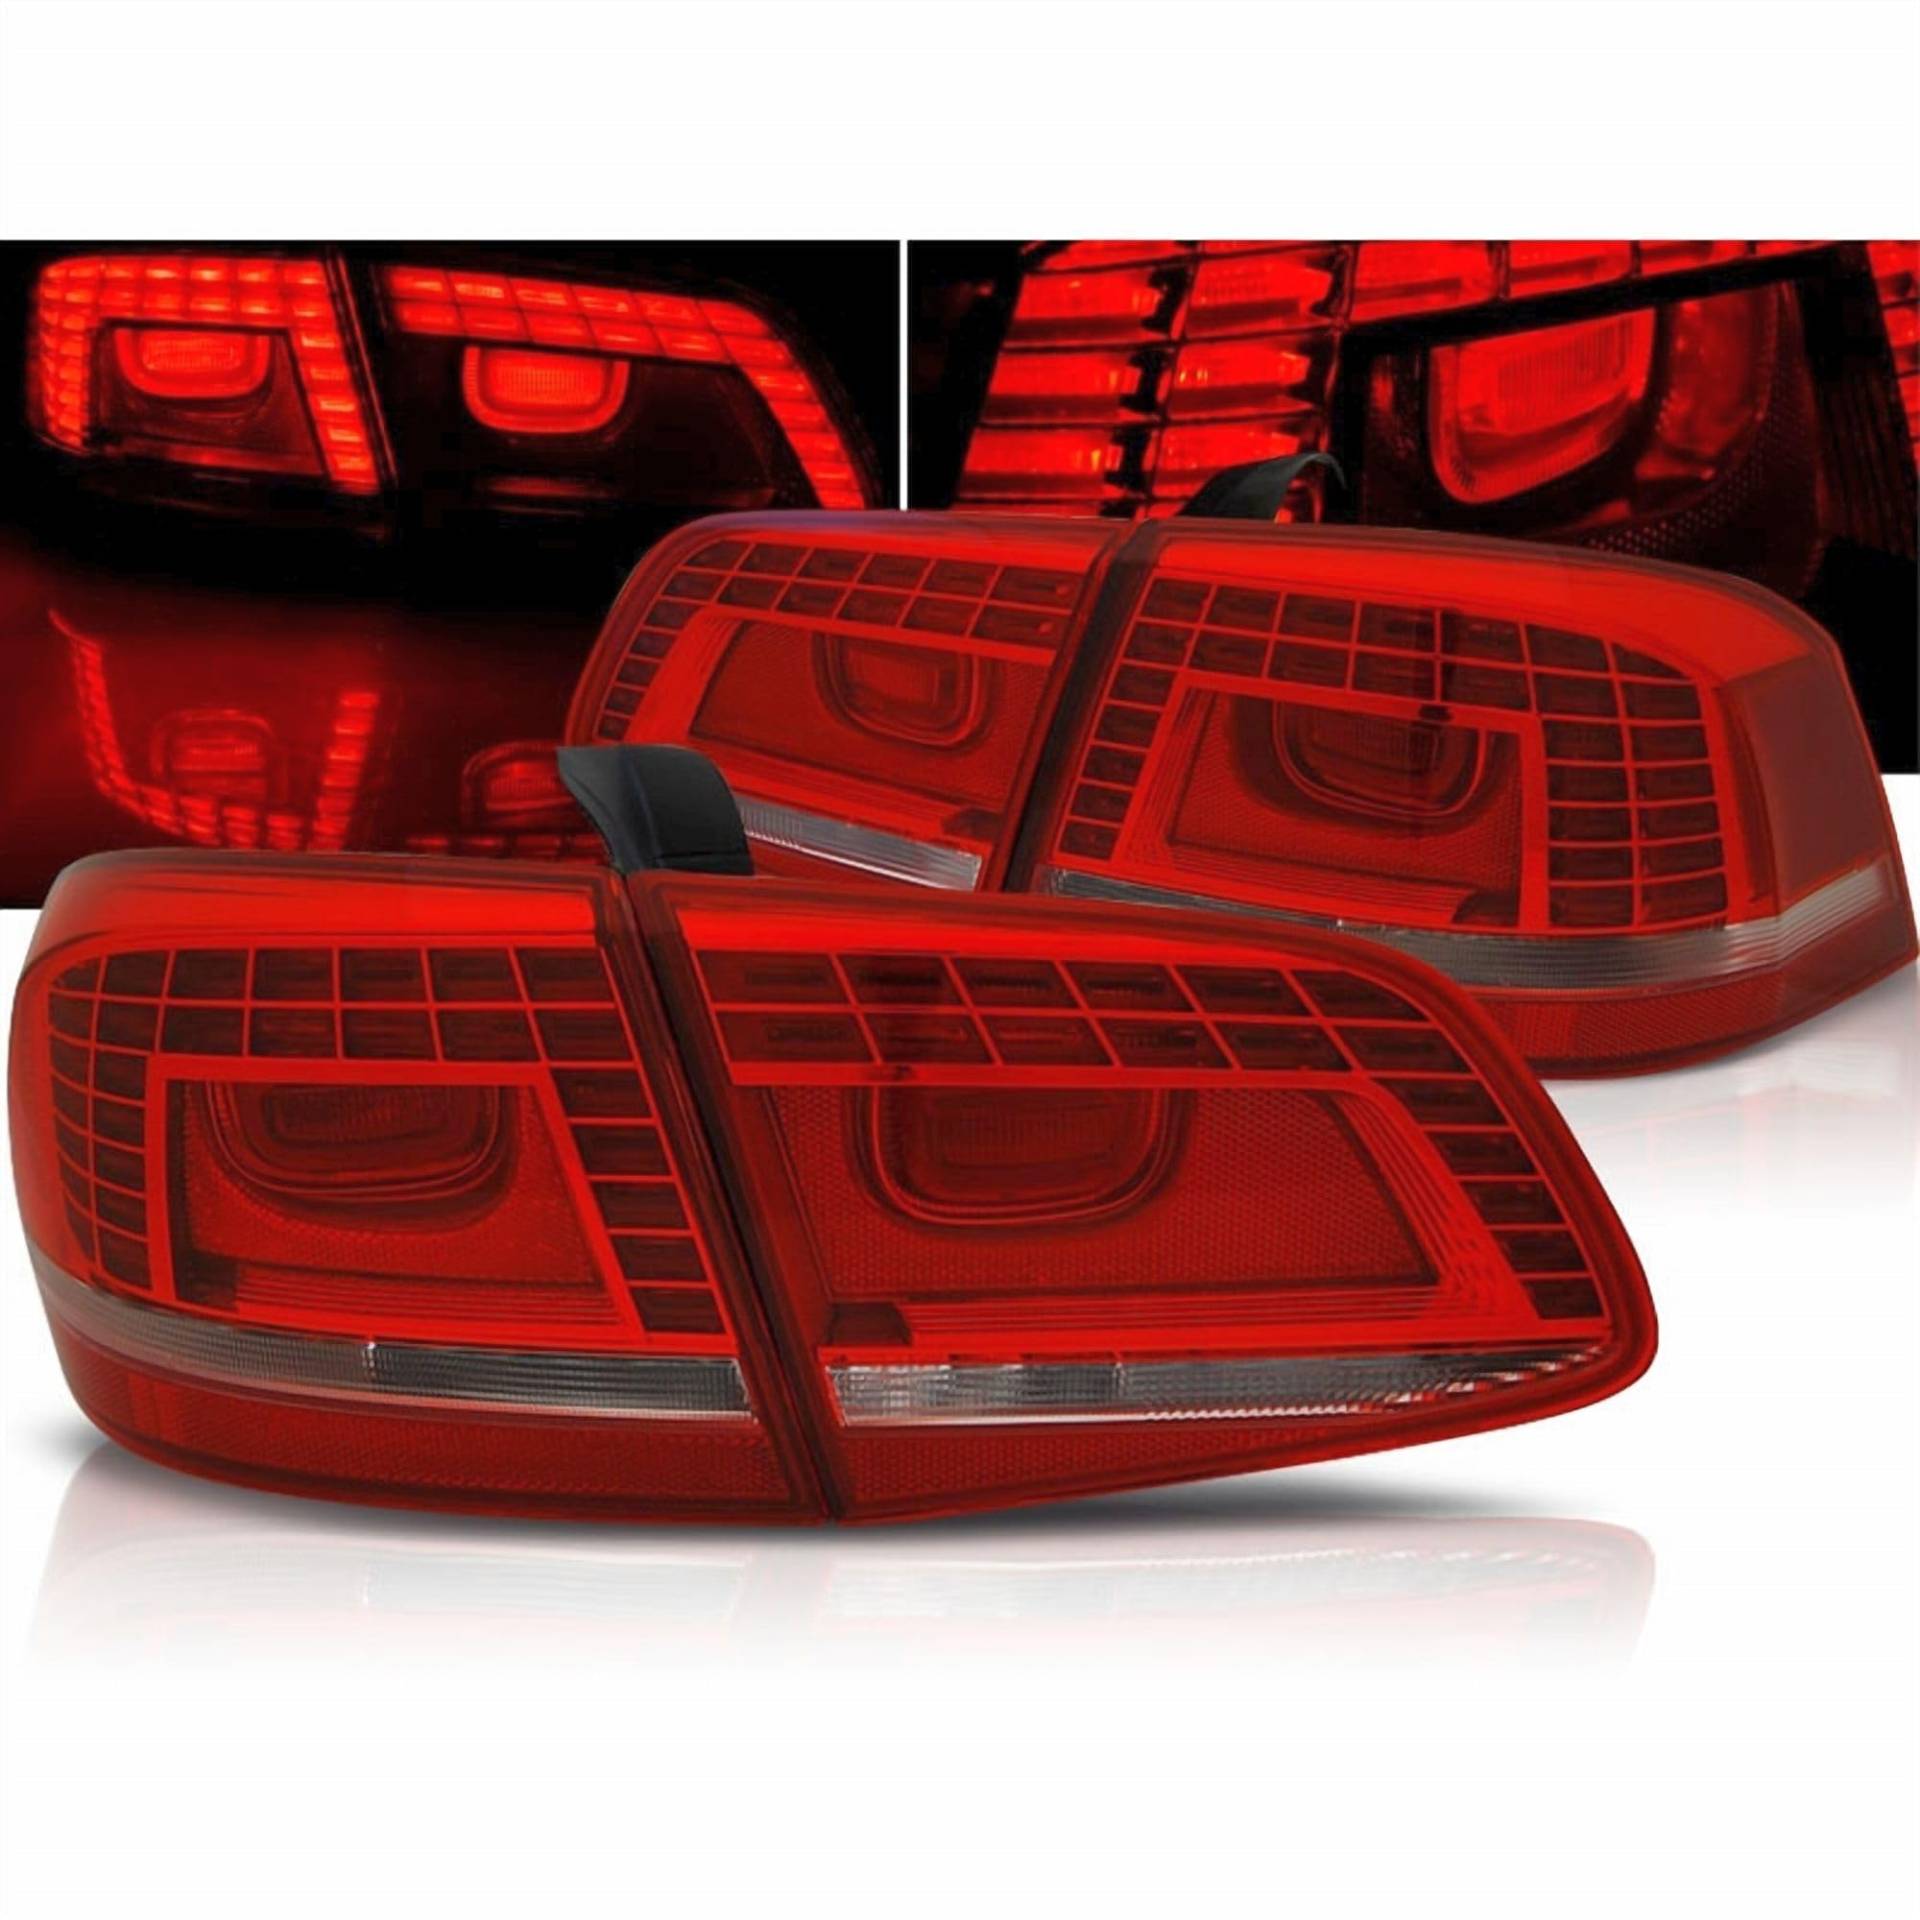 CR-Lights LED Rückleuchten in rot weiß für VW Passat B7 3C Limo 10.2010-10.2014 von CR-Lights